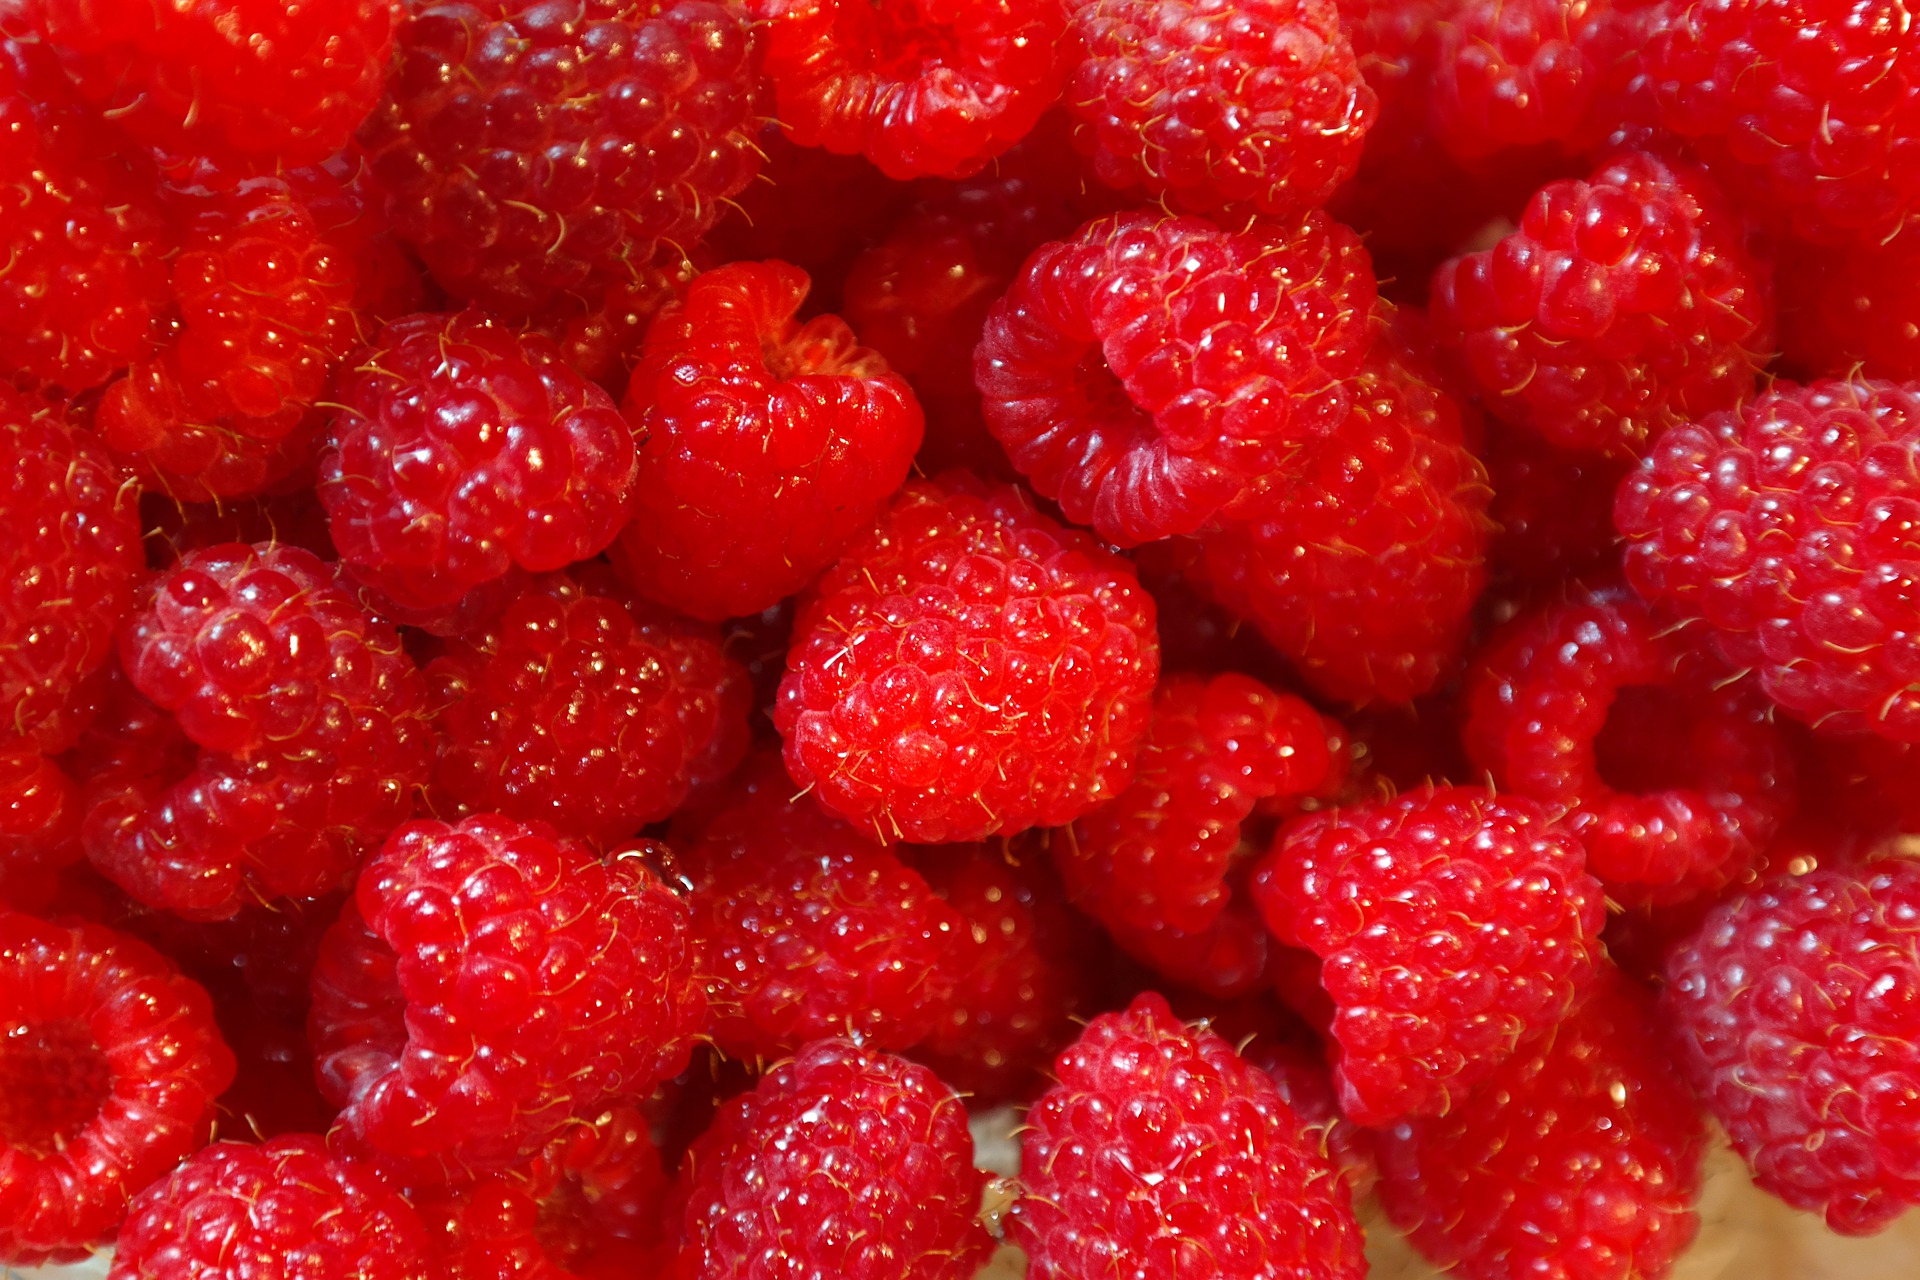 Если хотите зимой любоваться на целые просахаренные ягодки малины, приготовьте варенье по этому простому рецепту. Понадобятся всего три ингредиента, два из которых мы уже перечислили. Фото © Pixabay